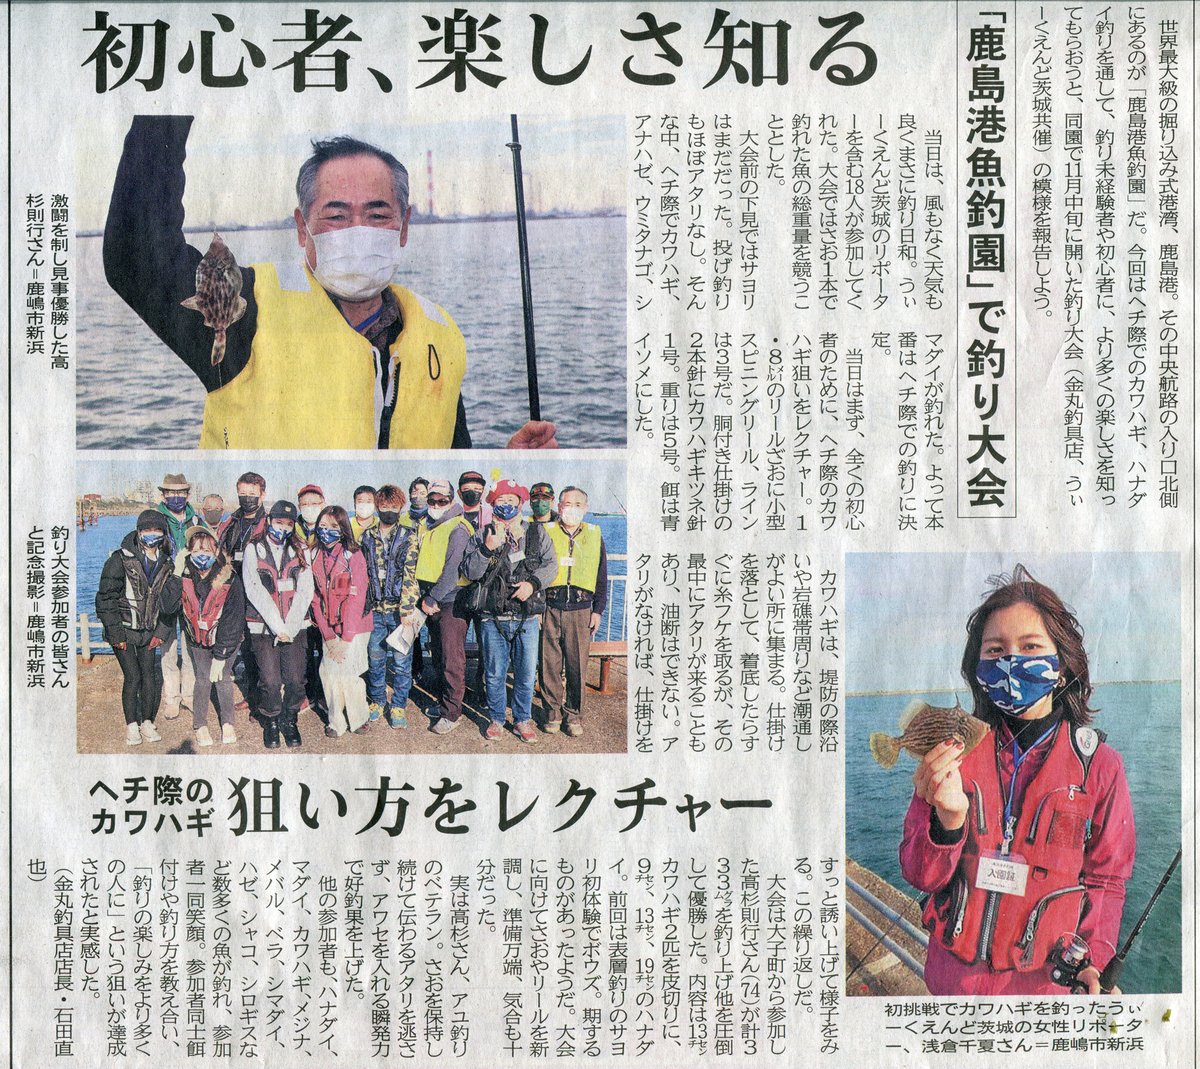 本日26日金曜日。茨城新聞で先日の釣り大会の記事が掲載されていました。 優勝者の高杉さん＆準優勝の千夏さんが大きく載っていました♪ 来年2月前後に、サヨリを対象とした釣り大会を計画しています。 今回同様に、一般募集はしないで、気の合うメンバーで楽しみたいと思います。